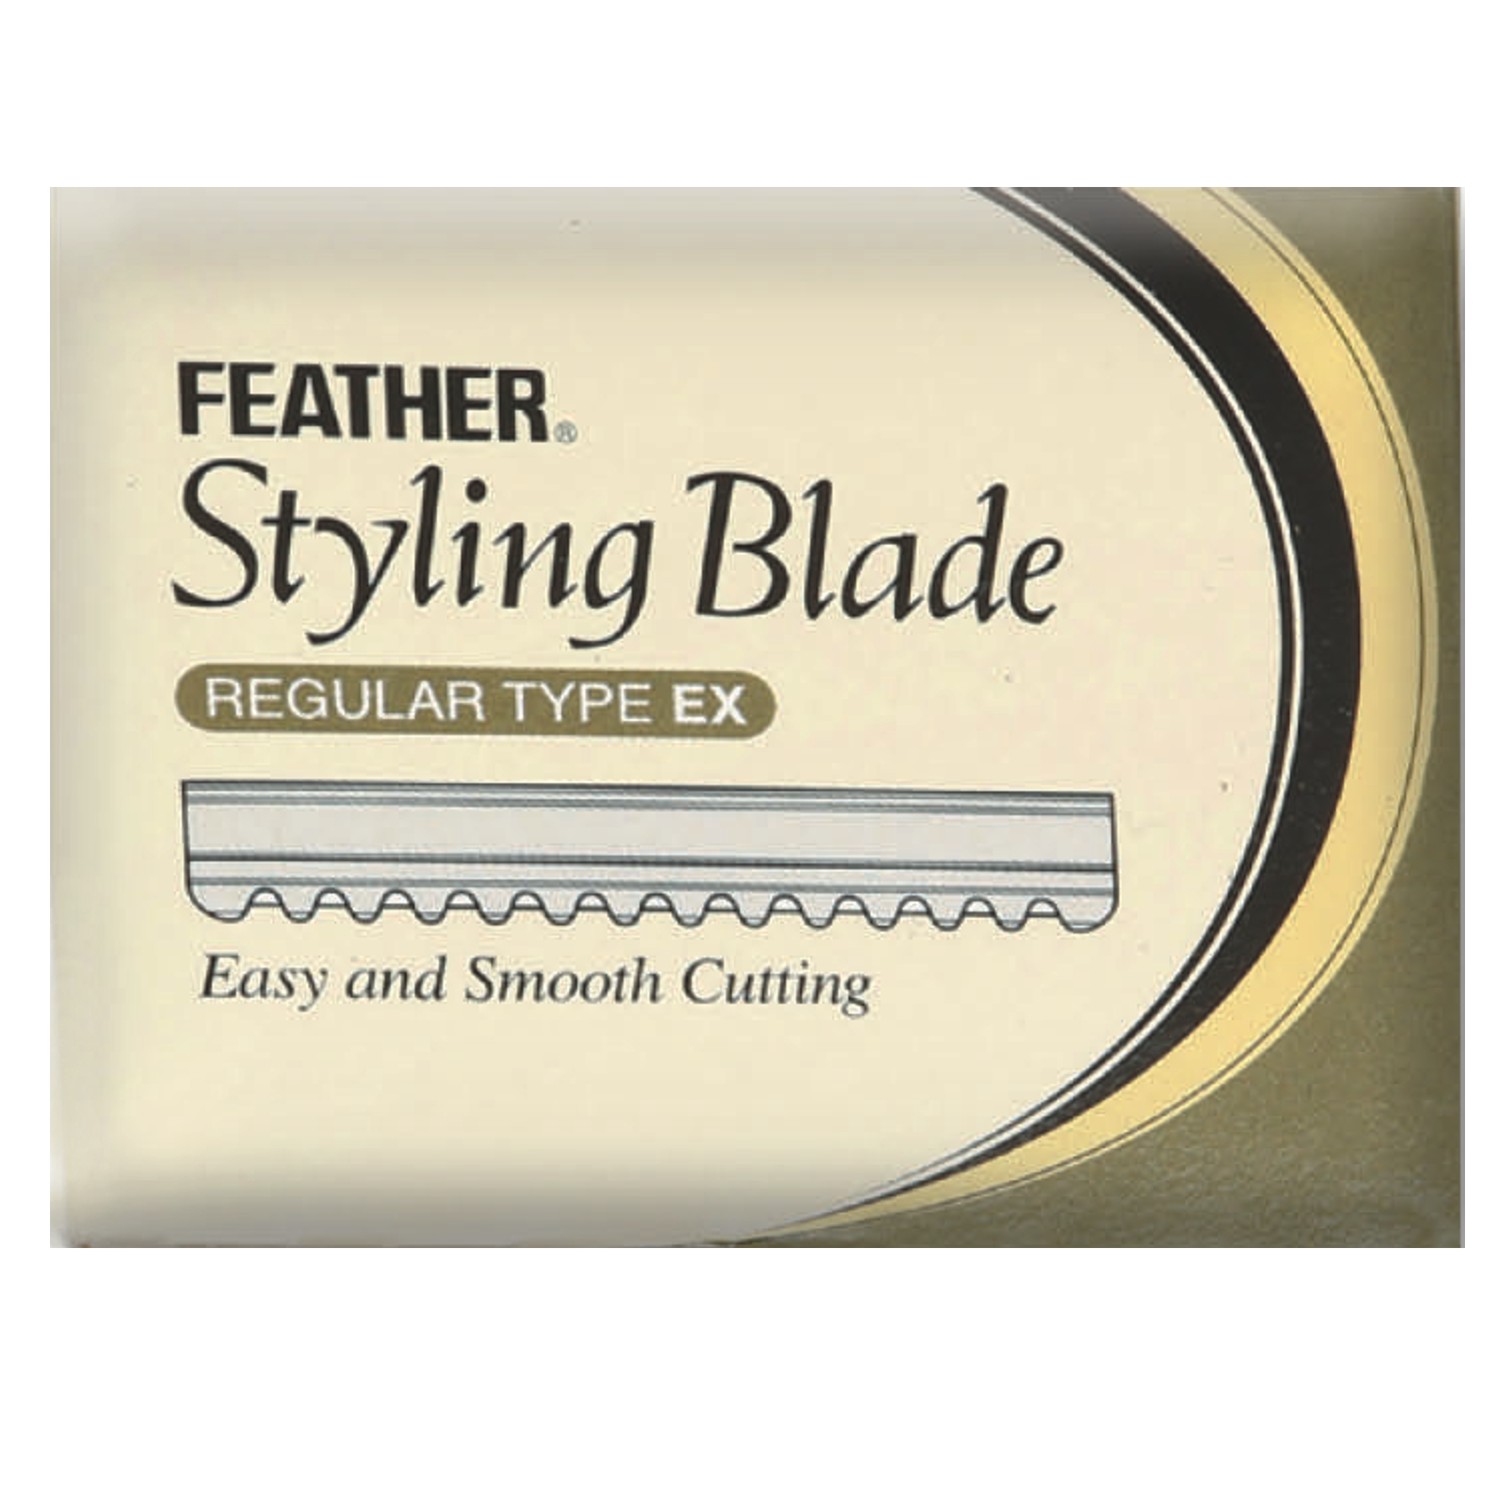 FEATHER Styling Blade Klingen 10 St. (APP-Code: KKL6)